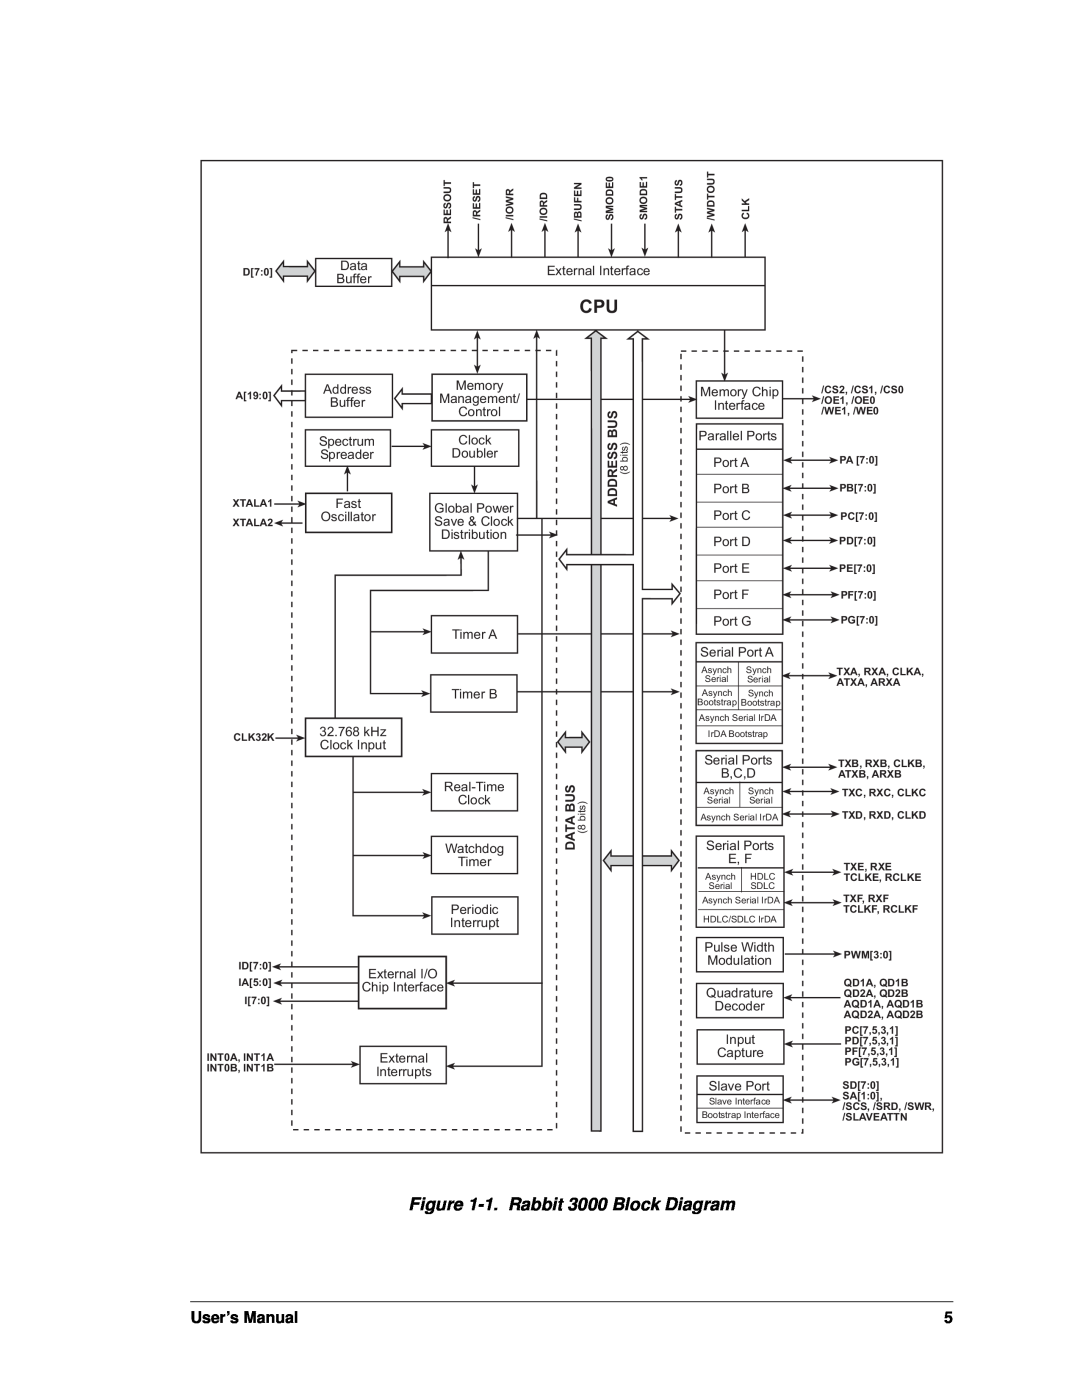 Jameco Electronics 2000 manual 1.Rabbit 3000 Block Diagram, User’s Manual 